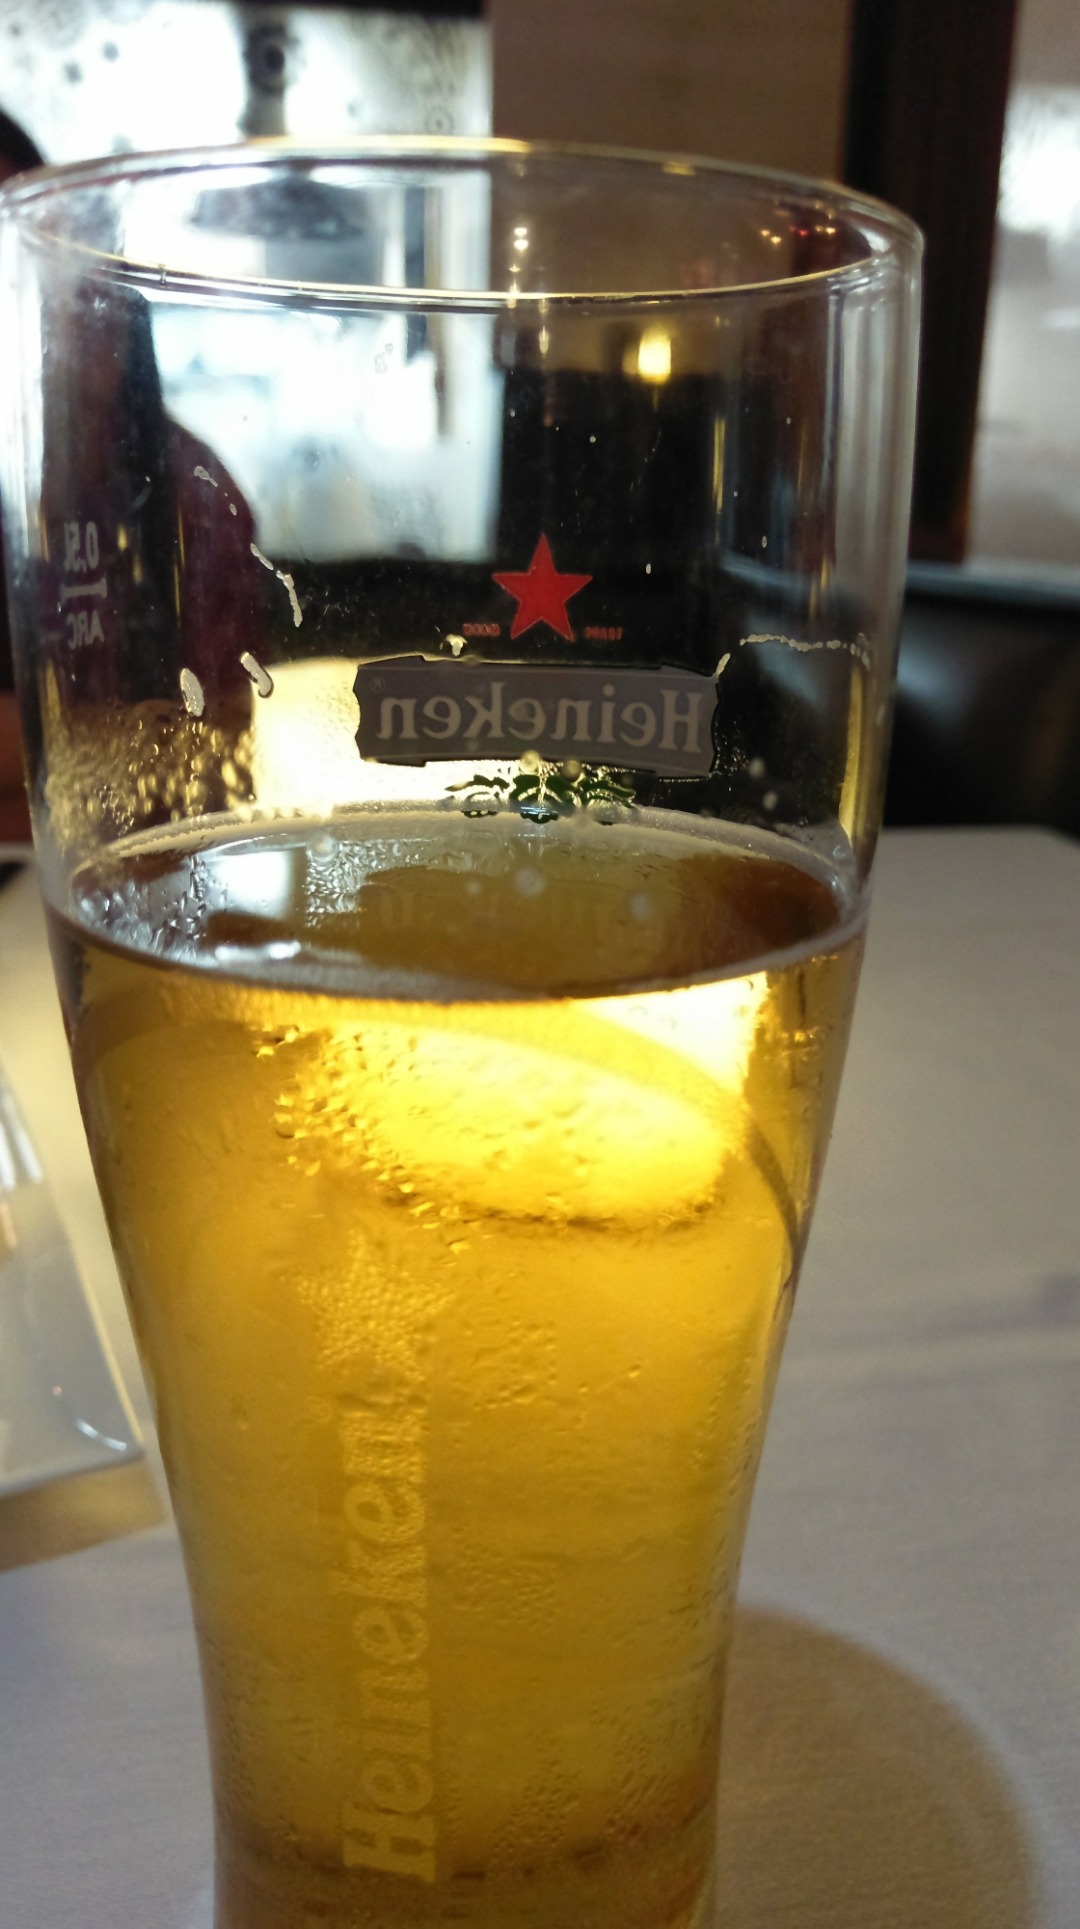 Having chilled beer @ rasoi ramee grand seef. 
#heineken #draughtbeer @ Ruka - Bahrain